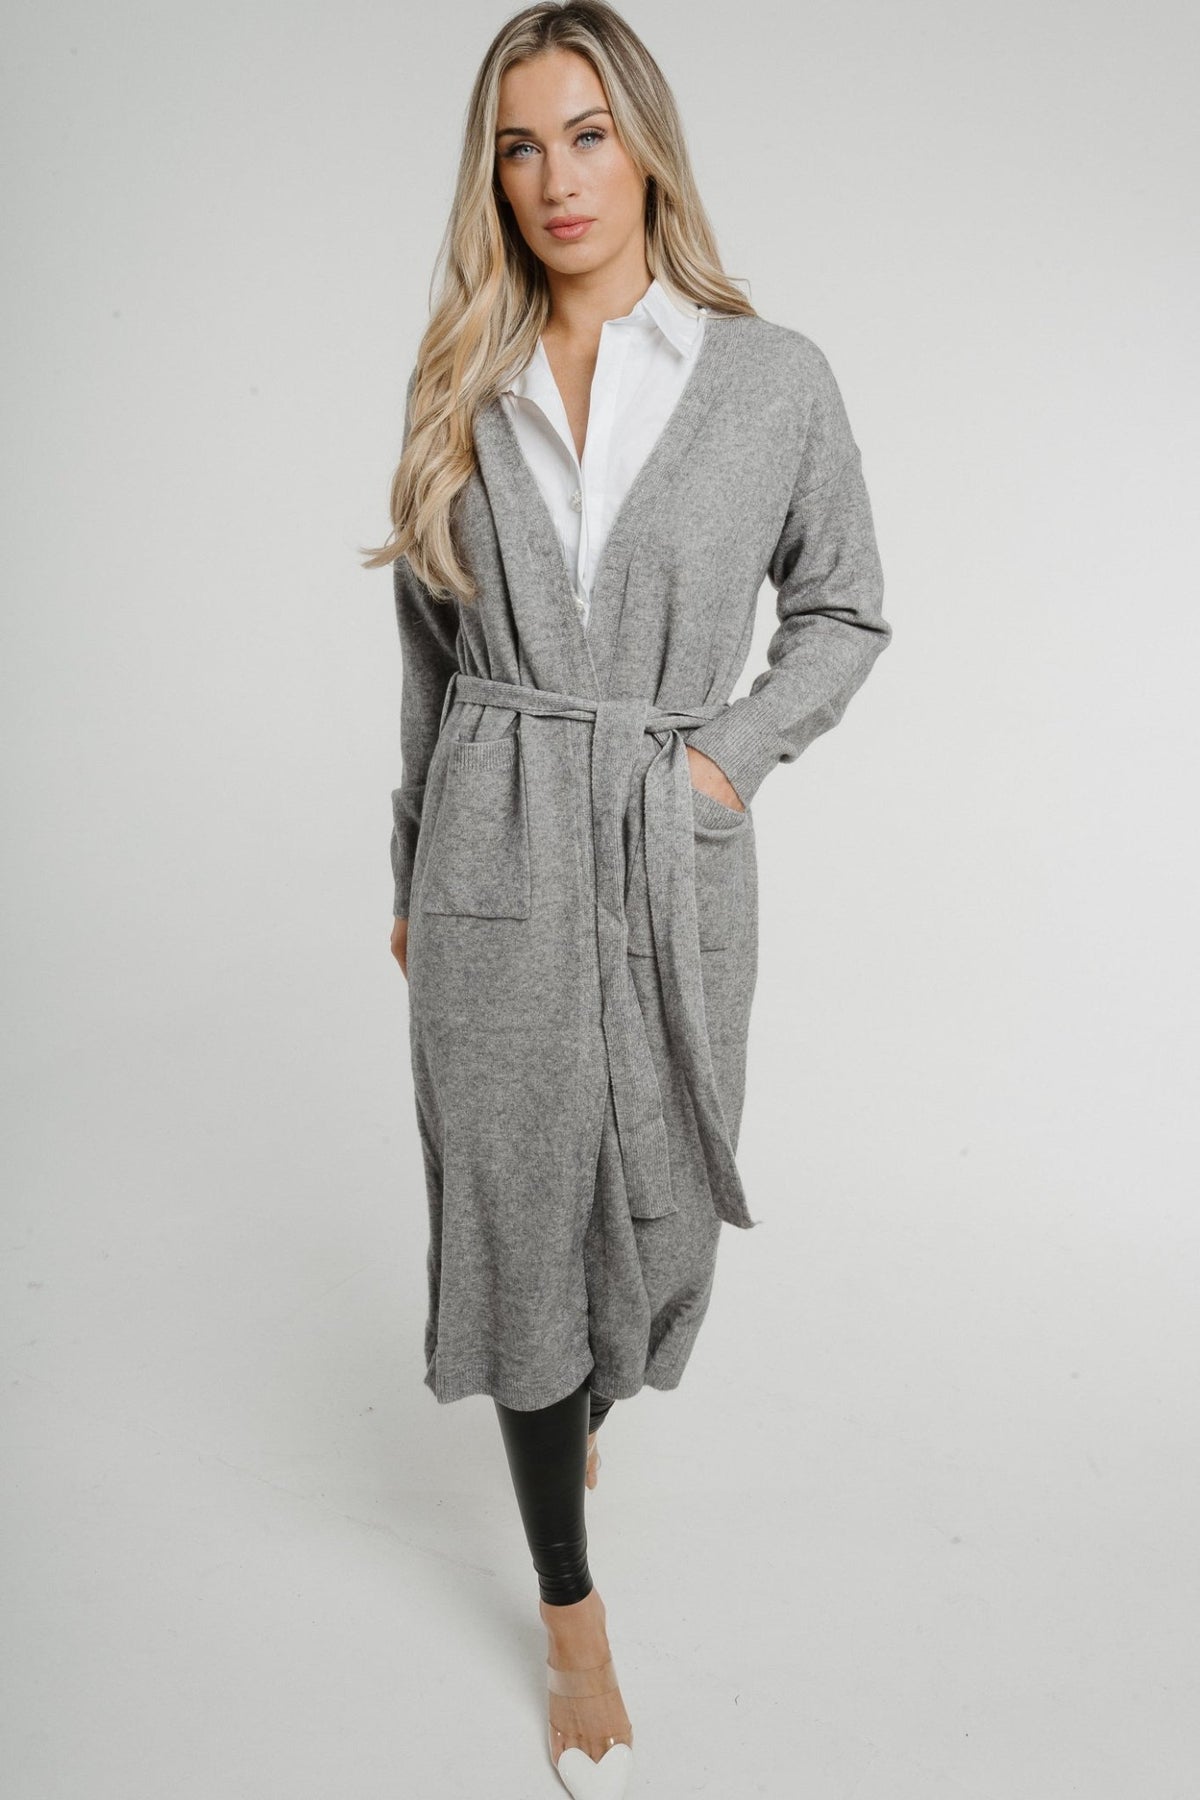 Paige Longline Cardigan In Grey - The Walk in Wardrobe